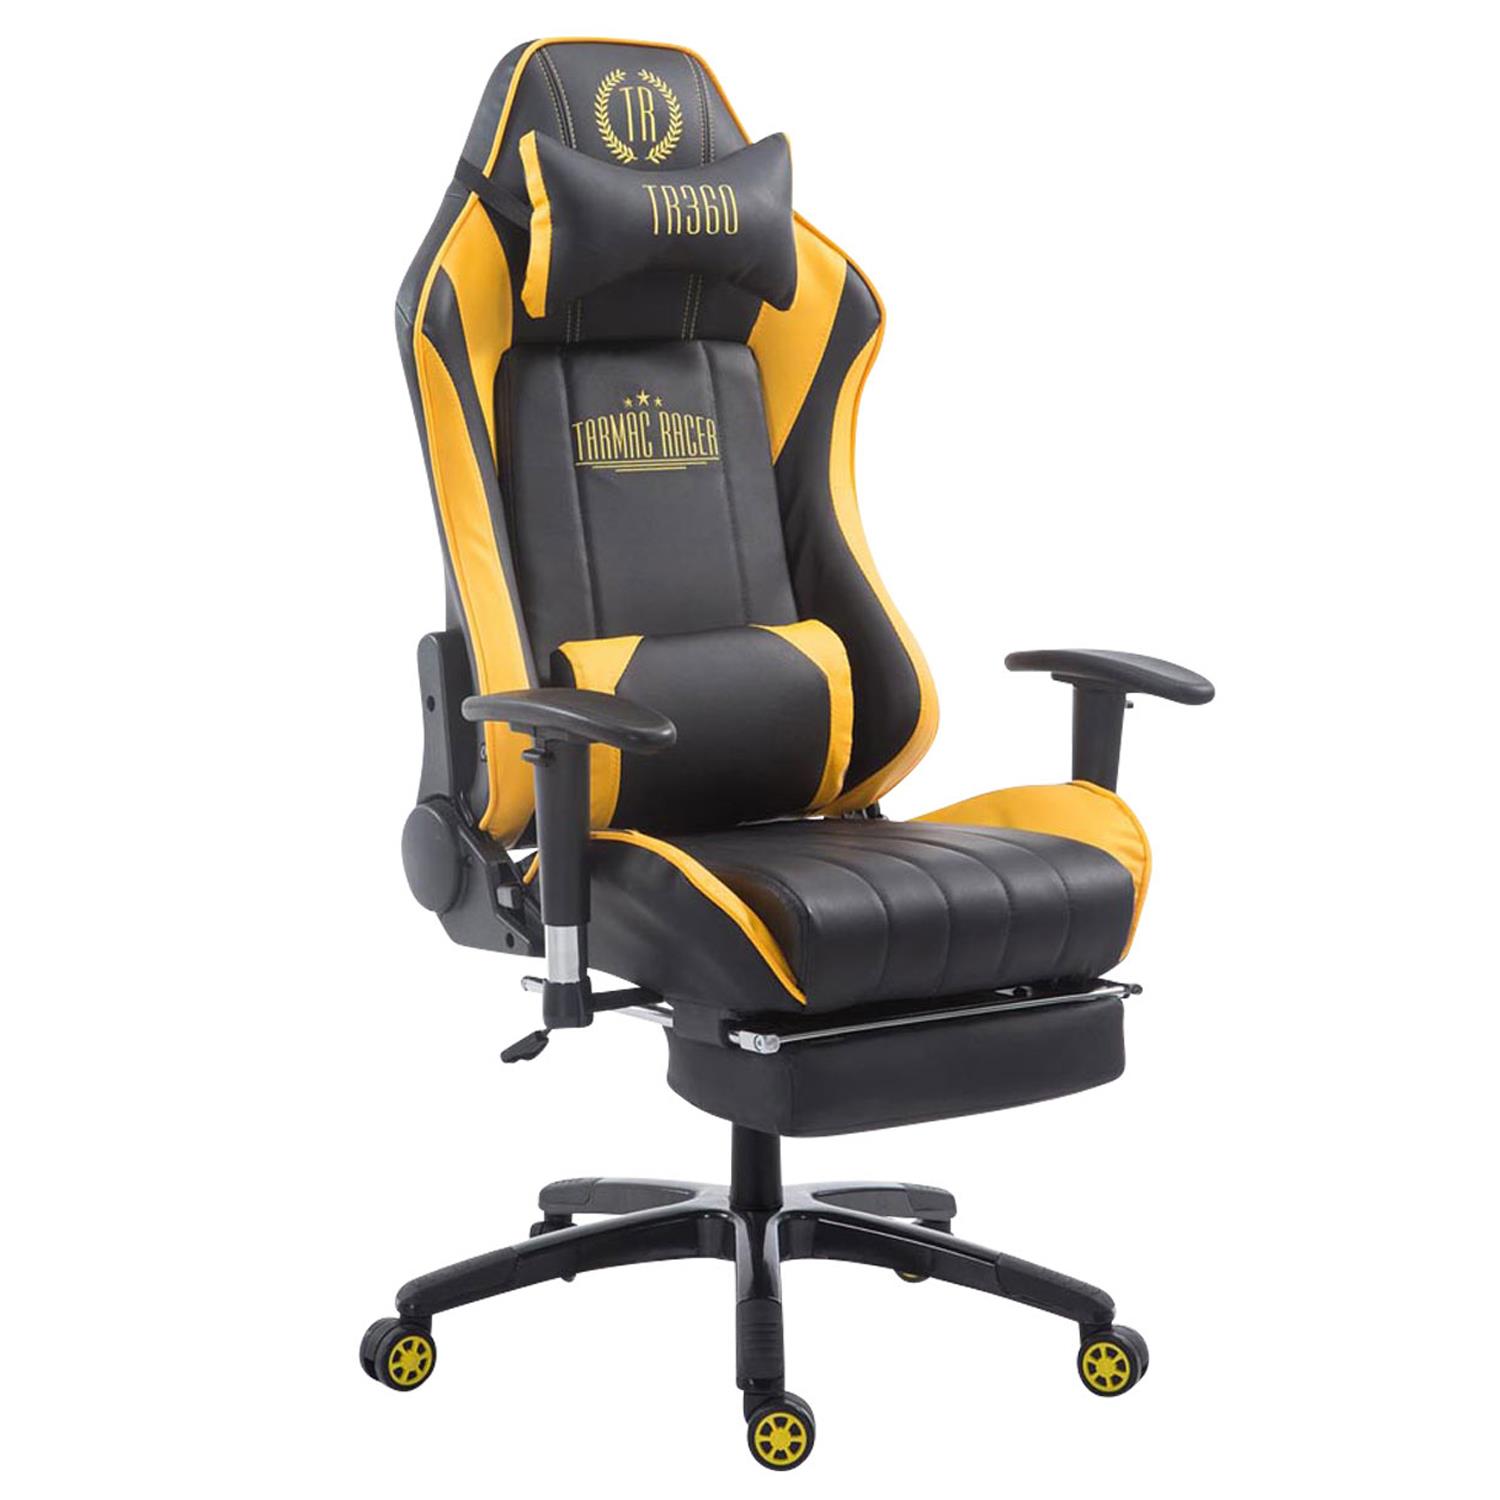 Cadeira Gaming TURBO com Apoio para os pés, Encosto Reclinável, Almofadas Lombar e Cervical, Em Pele Preto/Amarelo